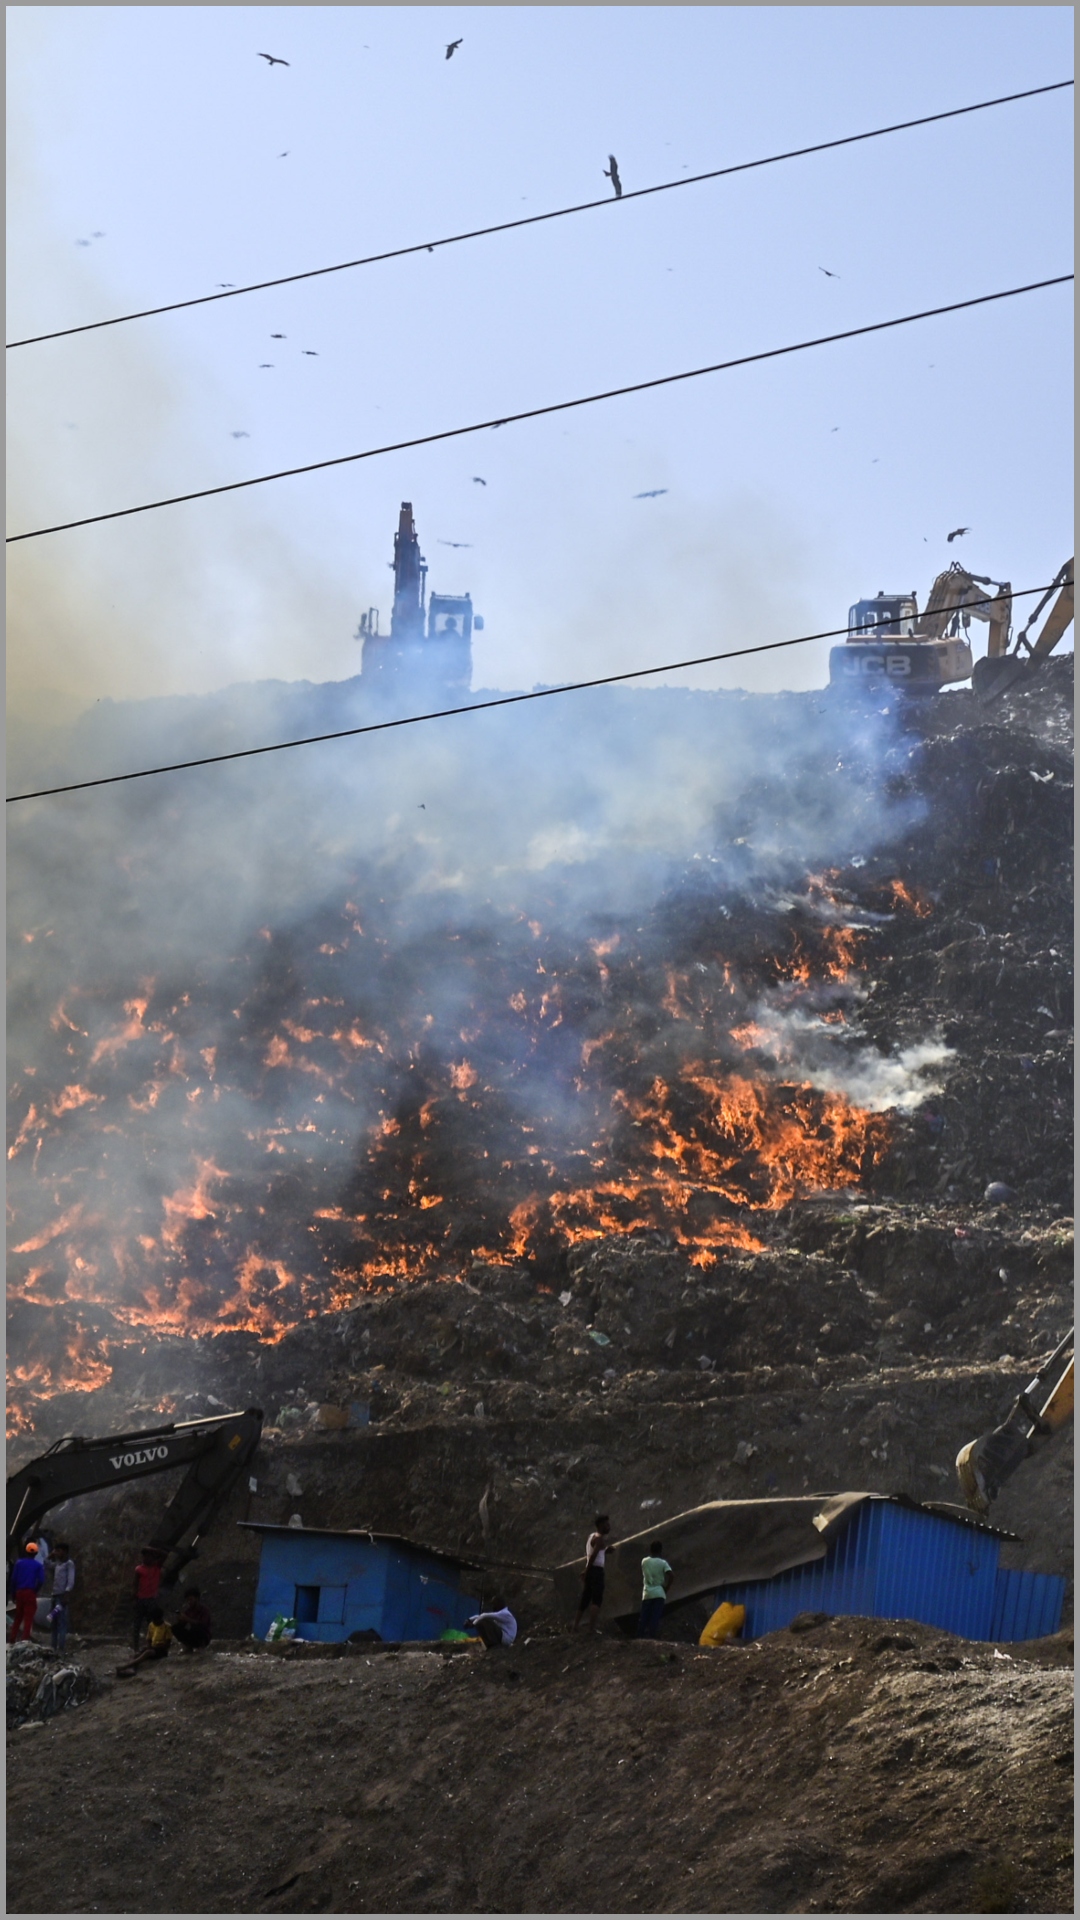 दिल्ली की गाजीपुर लैंडफिल में 20 घंटे से आग लगी हुई है 